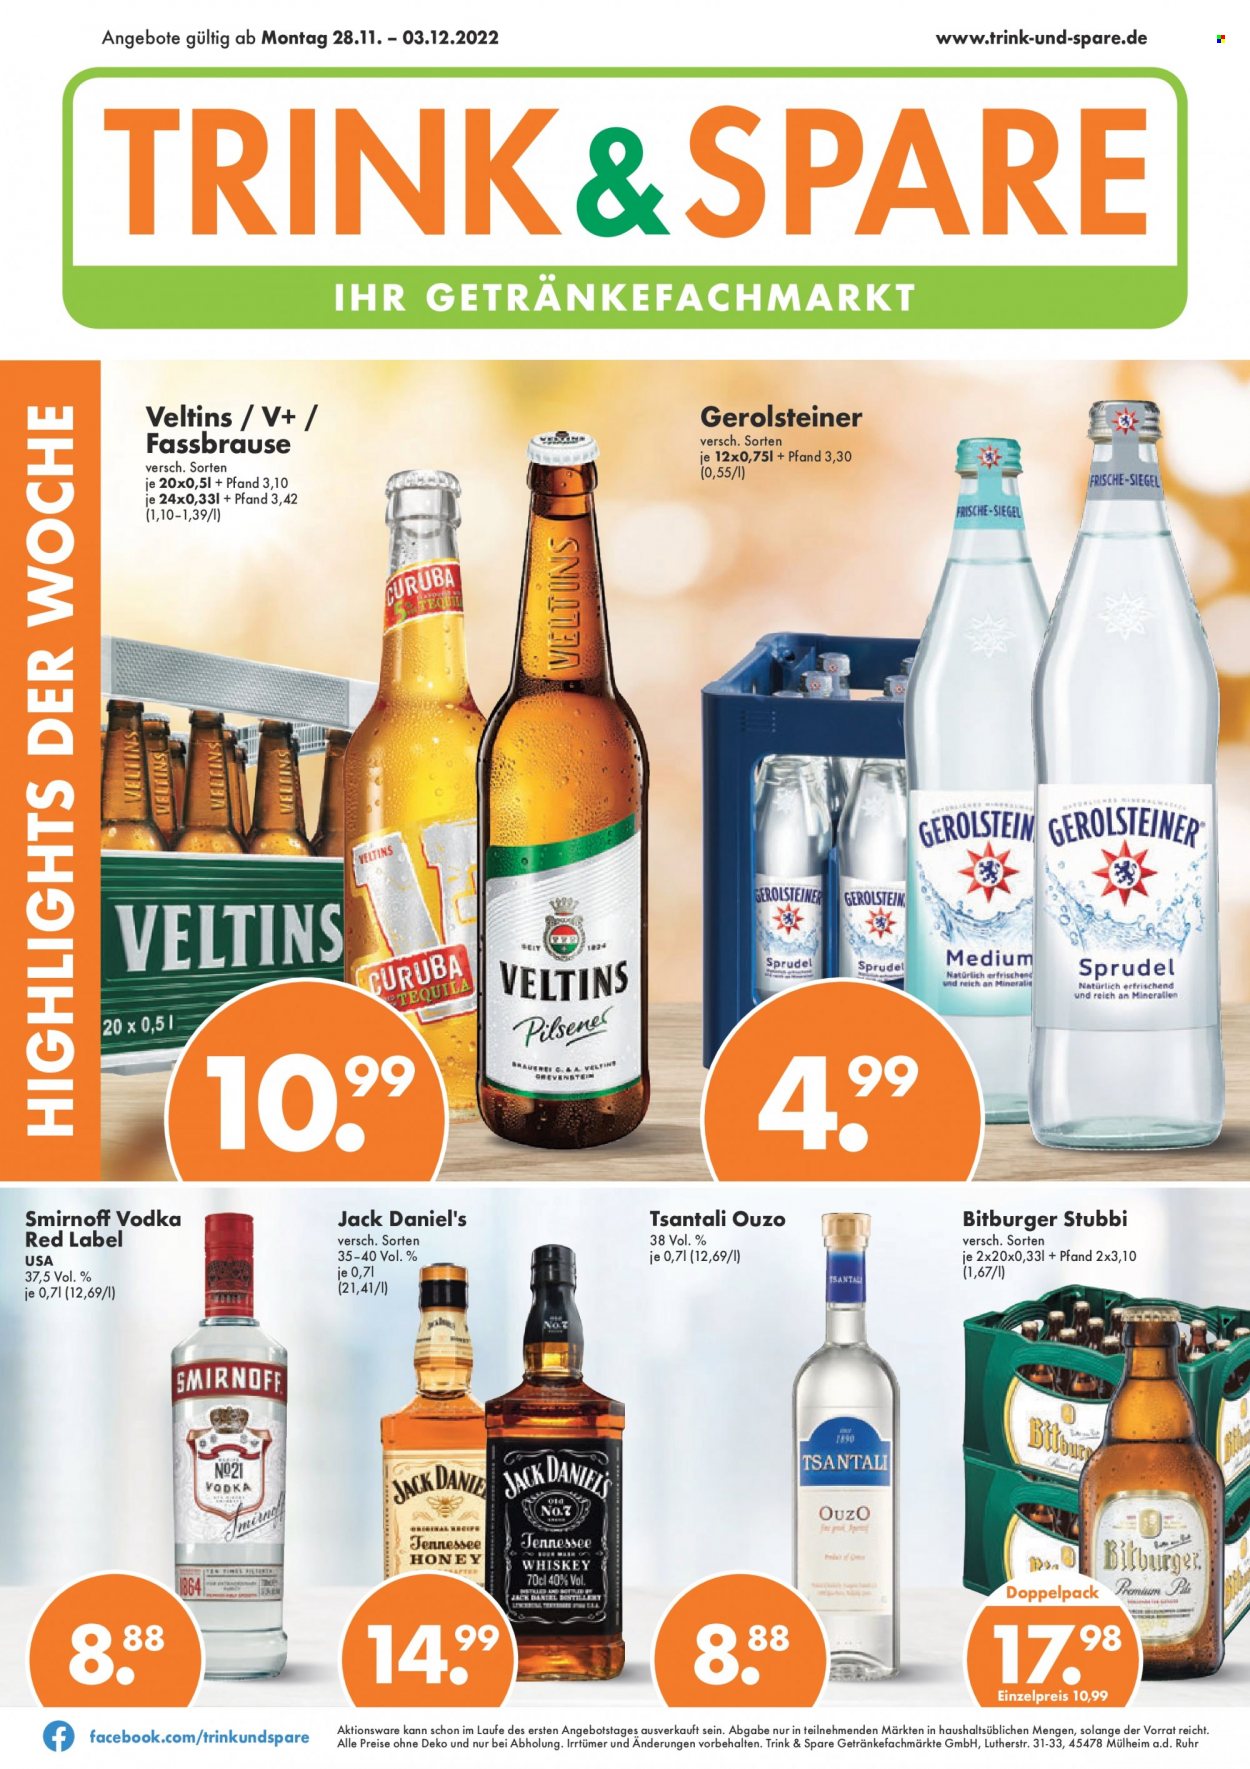 thumbnail - Prospekte Trink & Spare - 28.11.2022 - 3.12.2022 - Produkte in Aktion - Bitburger, Bier, Alkohol, Veltins, Mineralwasser, Gerolsteiner, Vodka, Jack Daniel’s, Ouzo, Smirnoff. Seite 1.